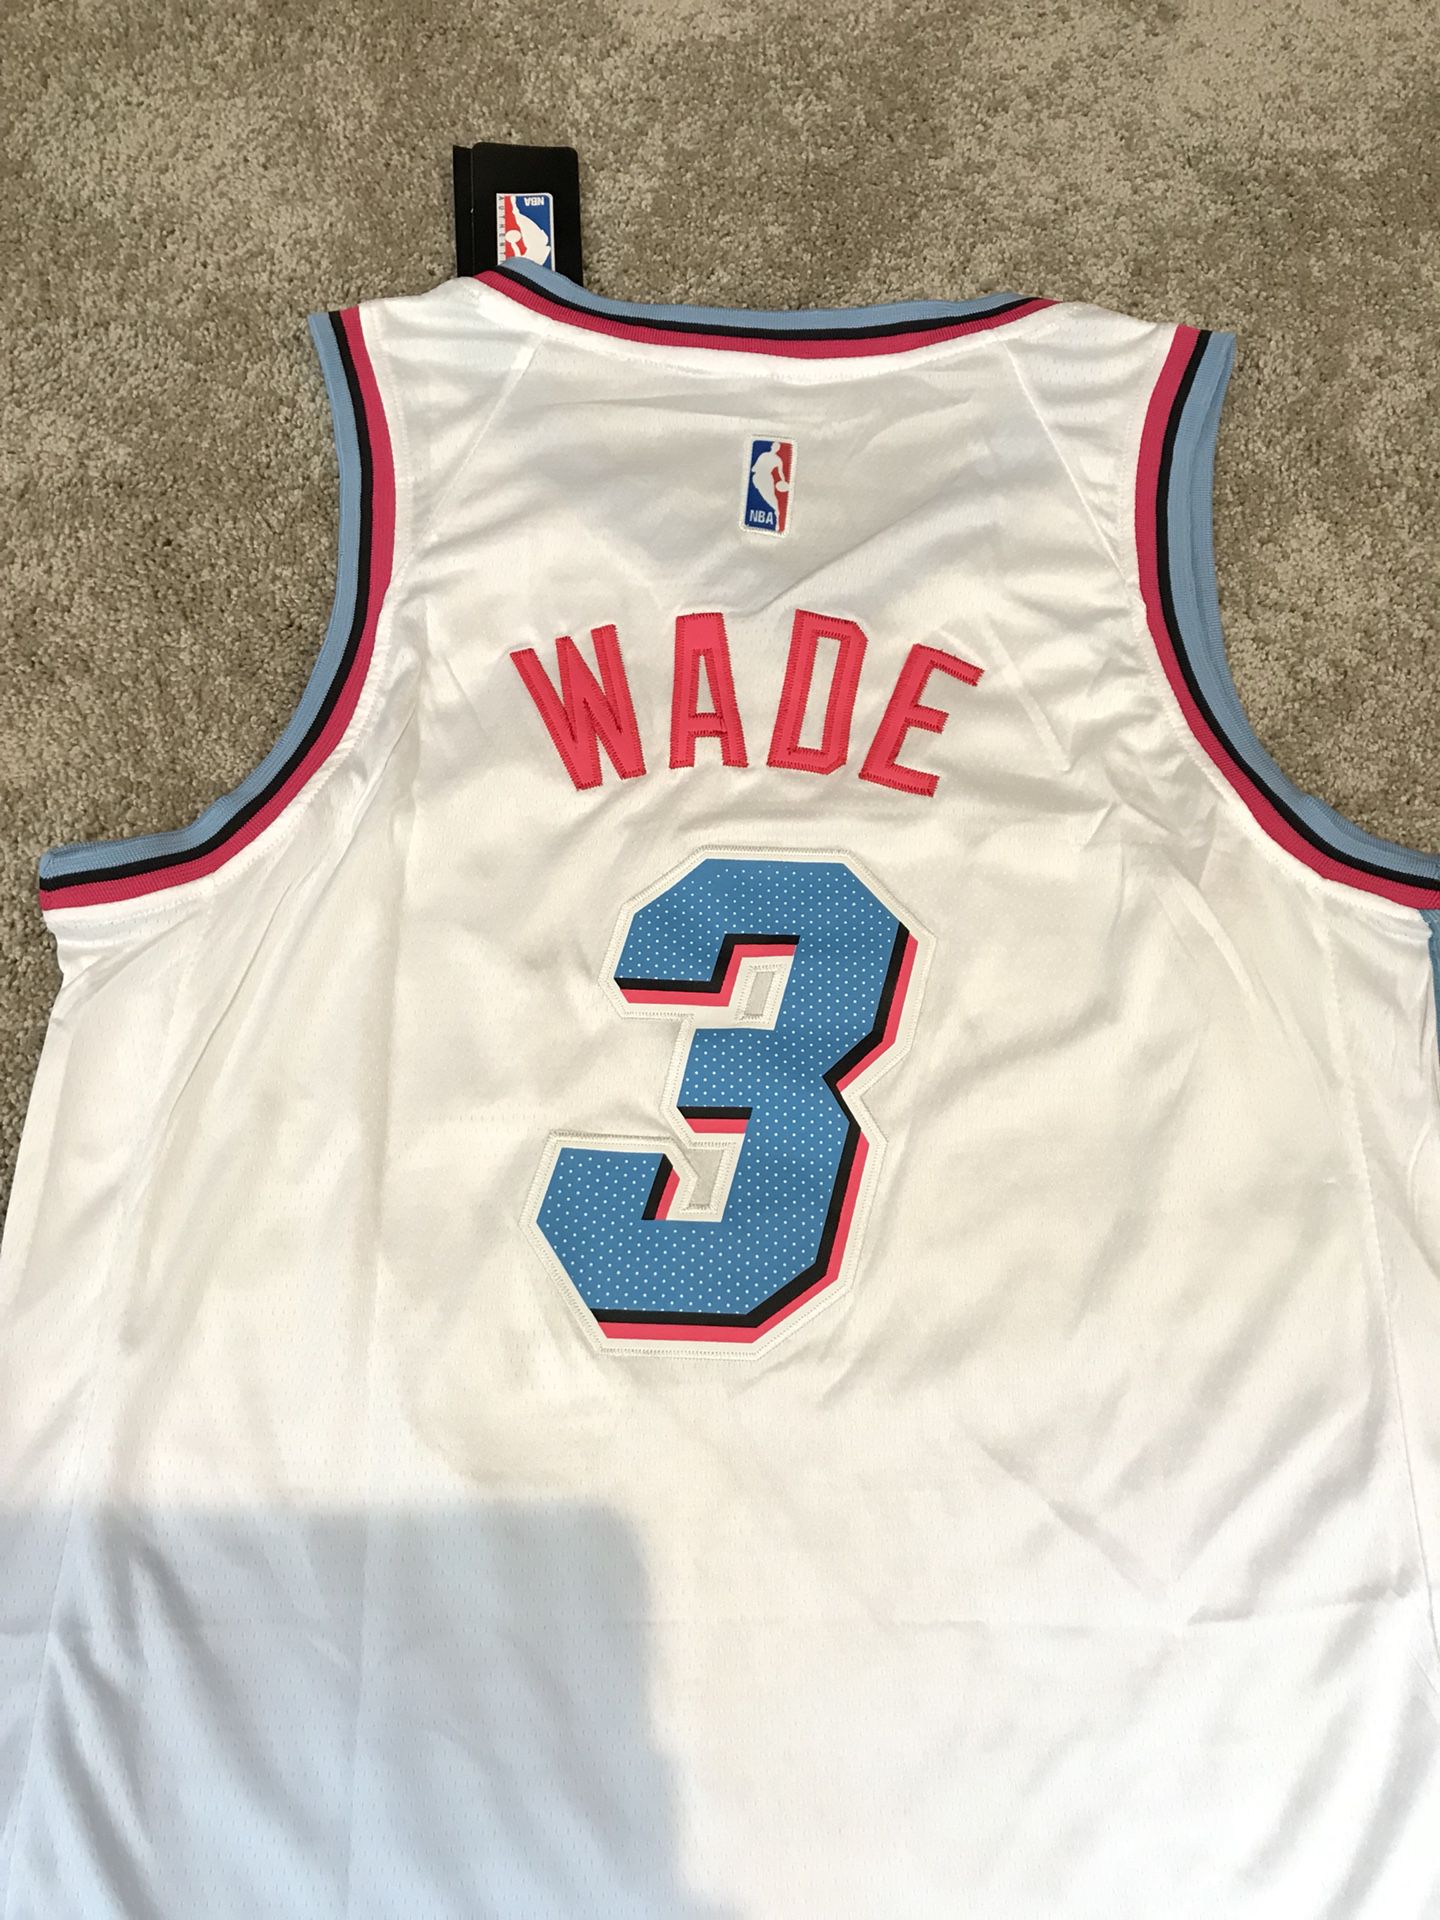 Dwyane Wade Miami Heat Sunset Vice Earned Edition Jersey for Sale in  Pembroke Pines, FL - OfferUp